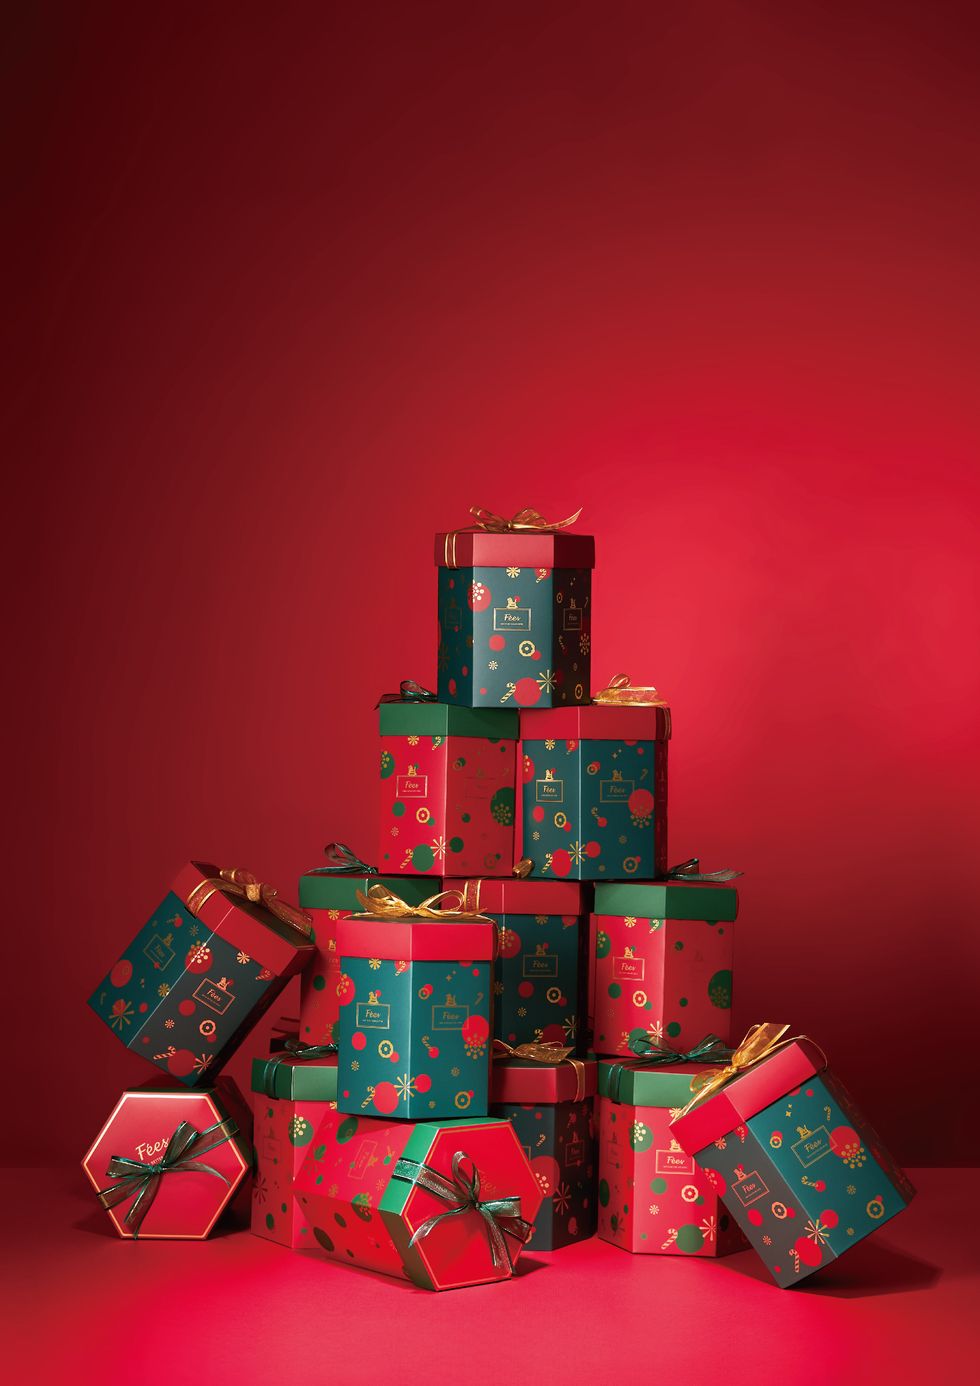 聖誕節,耶誕節,聖誕禮物,聖誕樹,香氛,禮物,聖誕節配色,儀式感,童趣,文青,質感,美妝,彩妝,保養